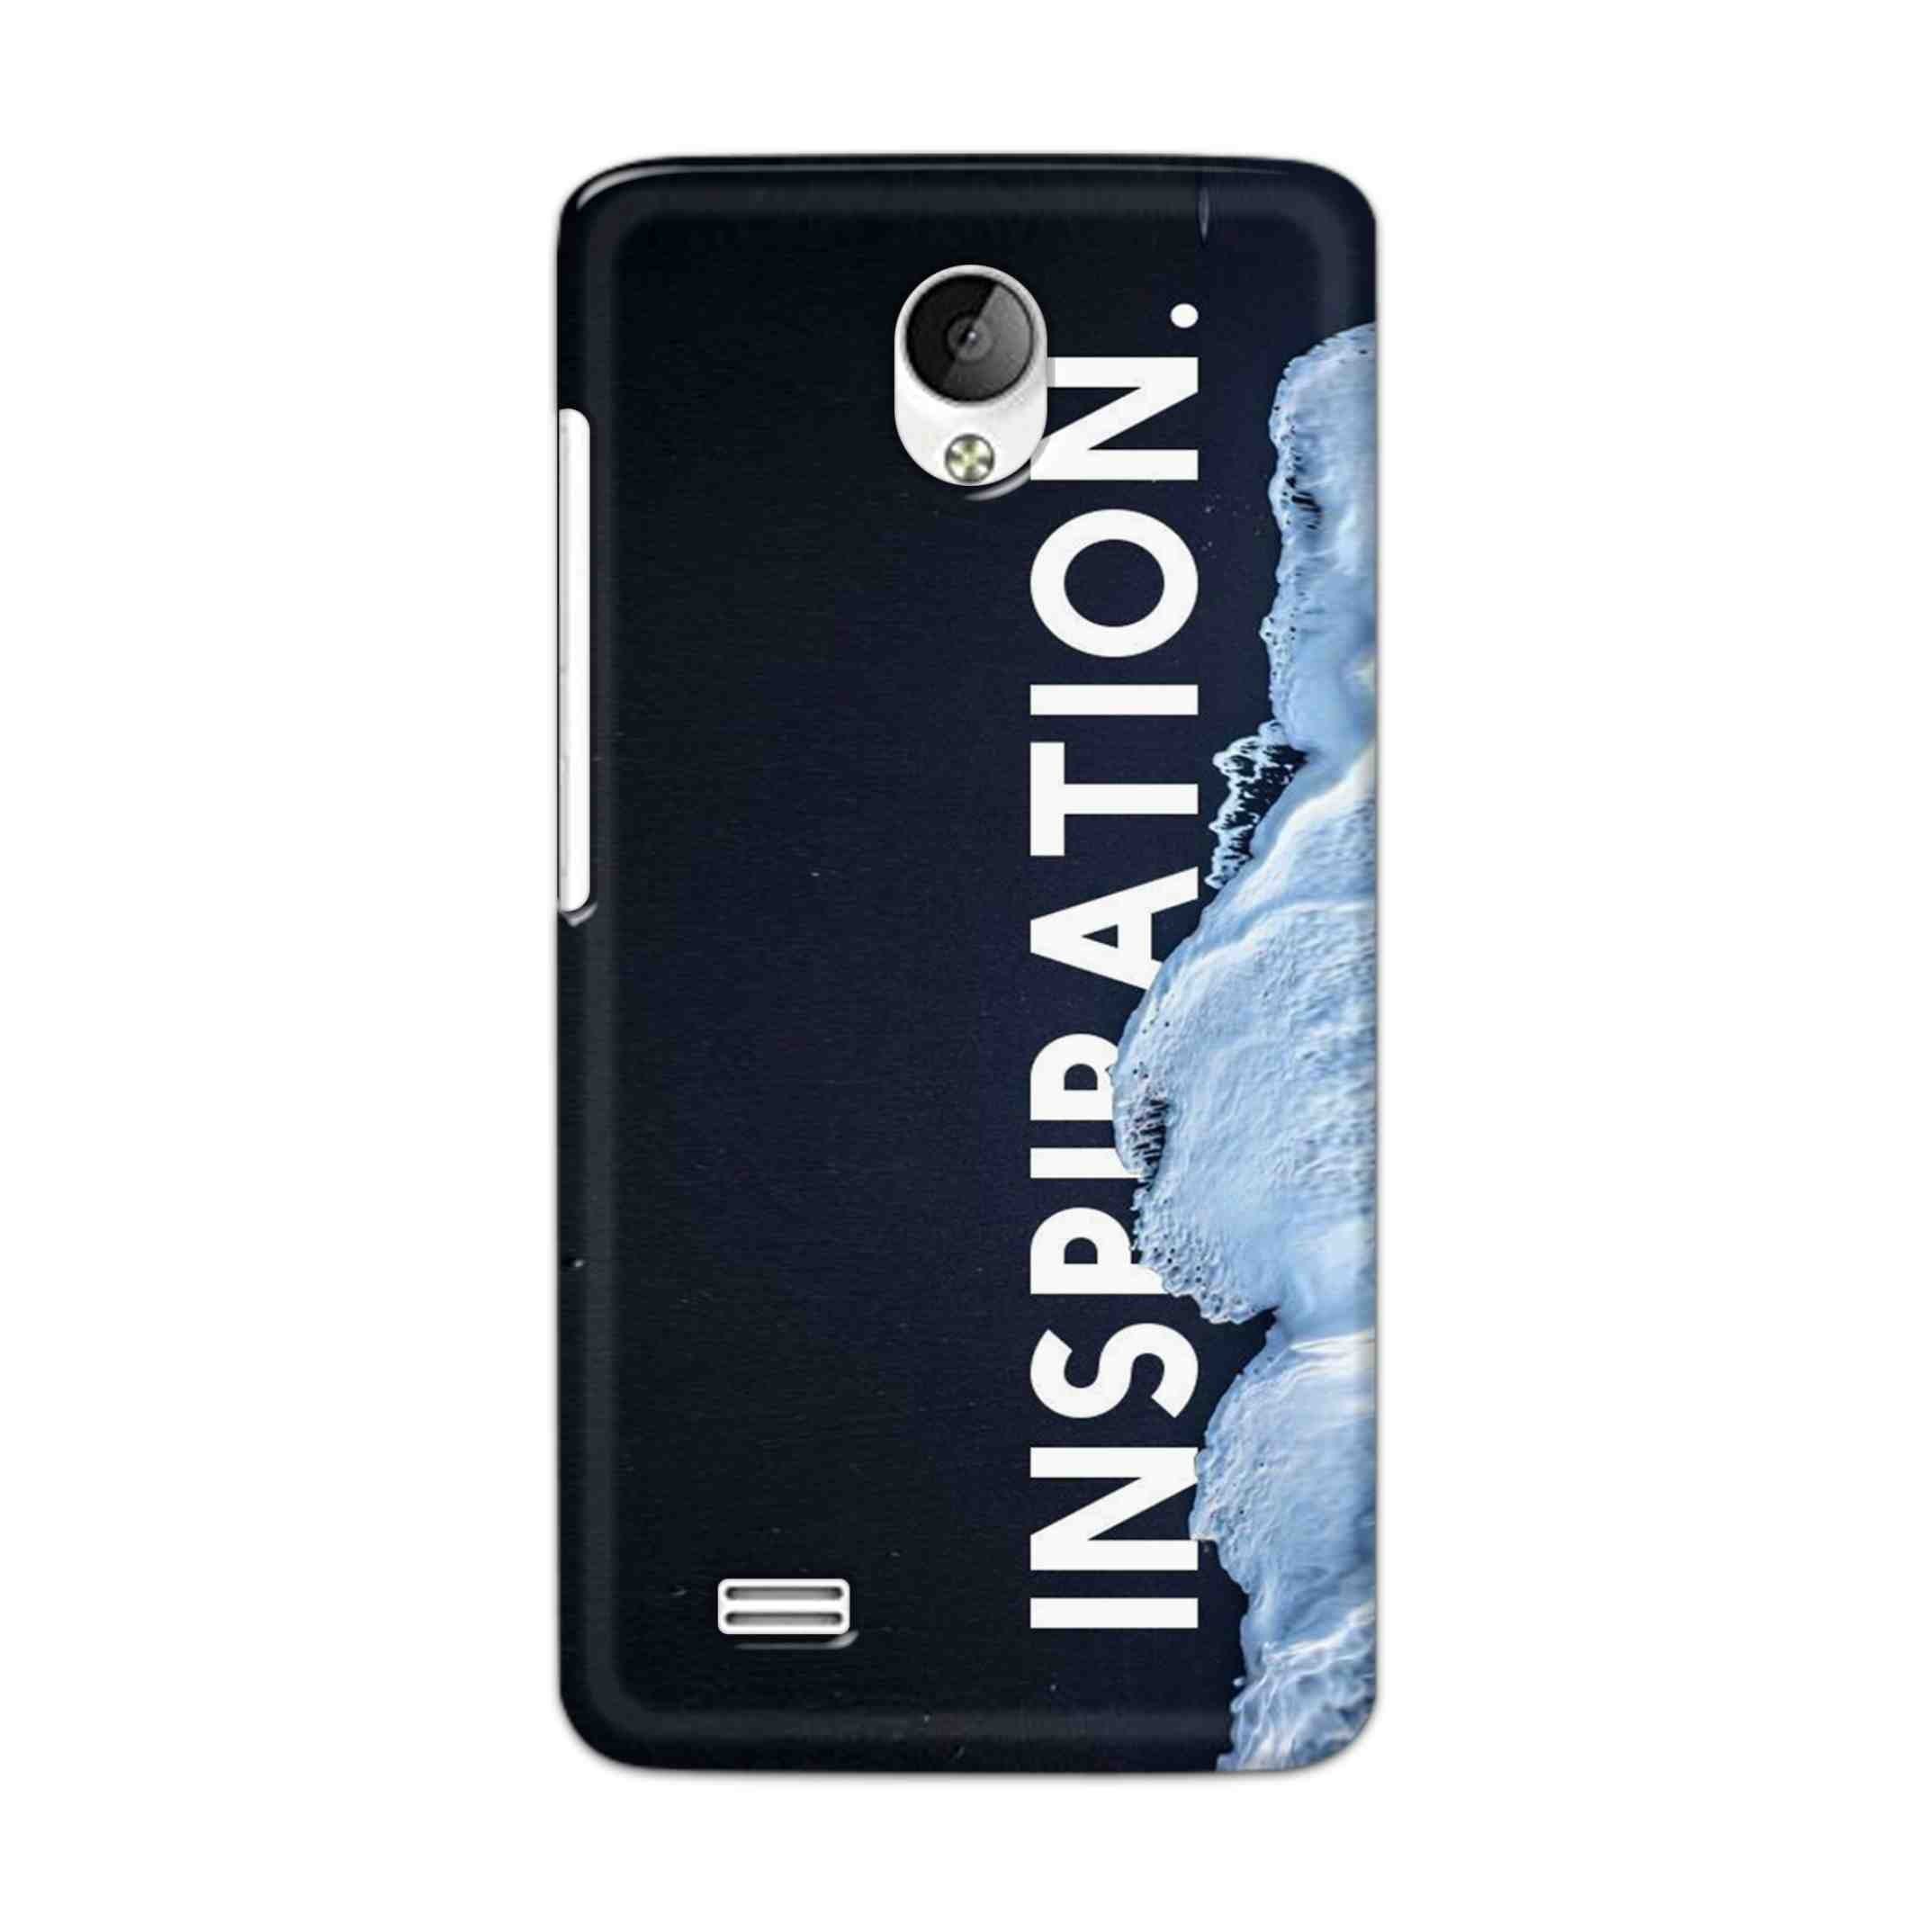 Buy Inspiration Hard Back Mobile Phone Case Cover For Vivo Y21 / Vivo Y21L Online